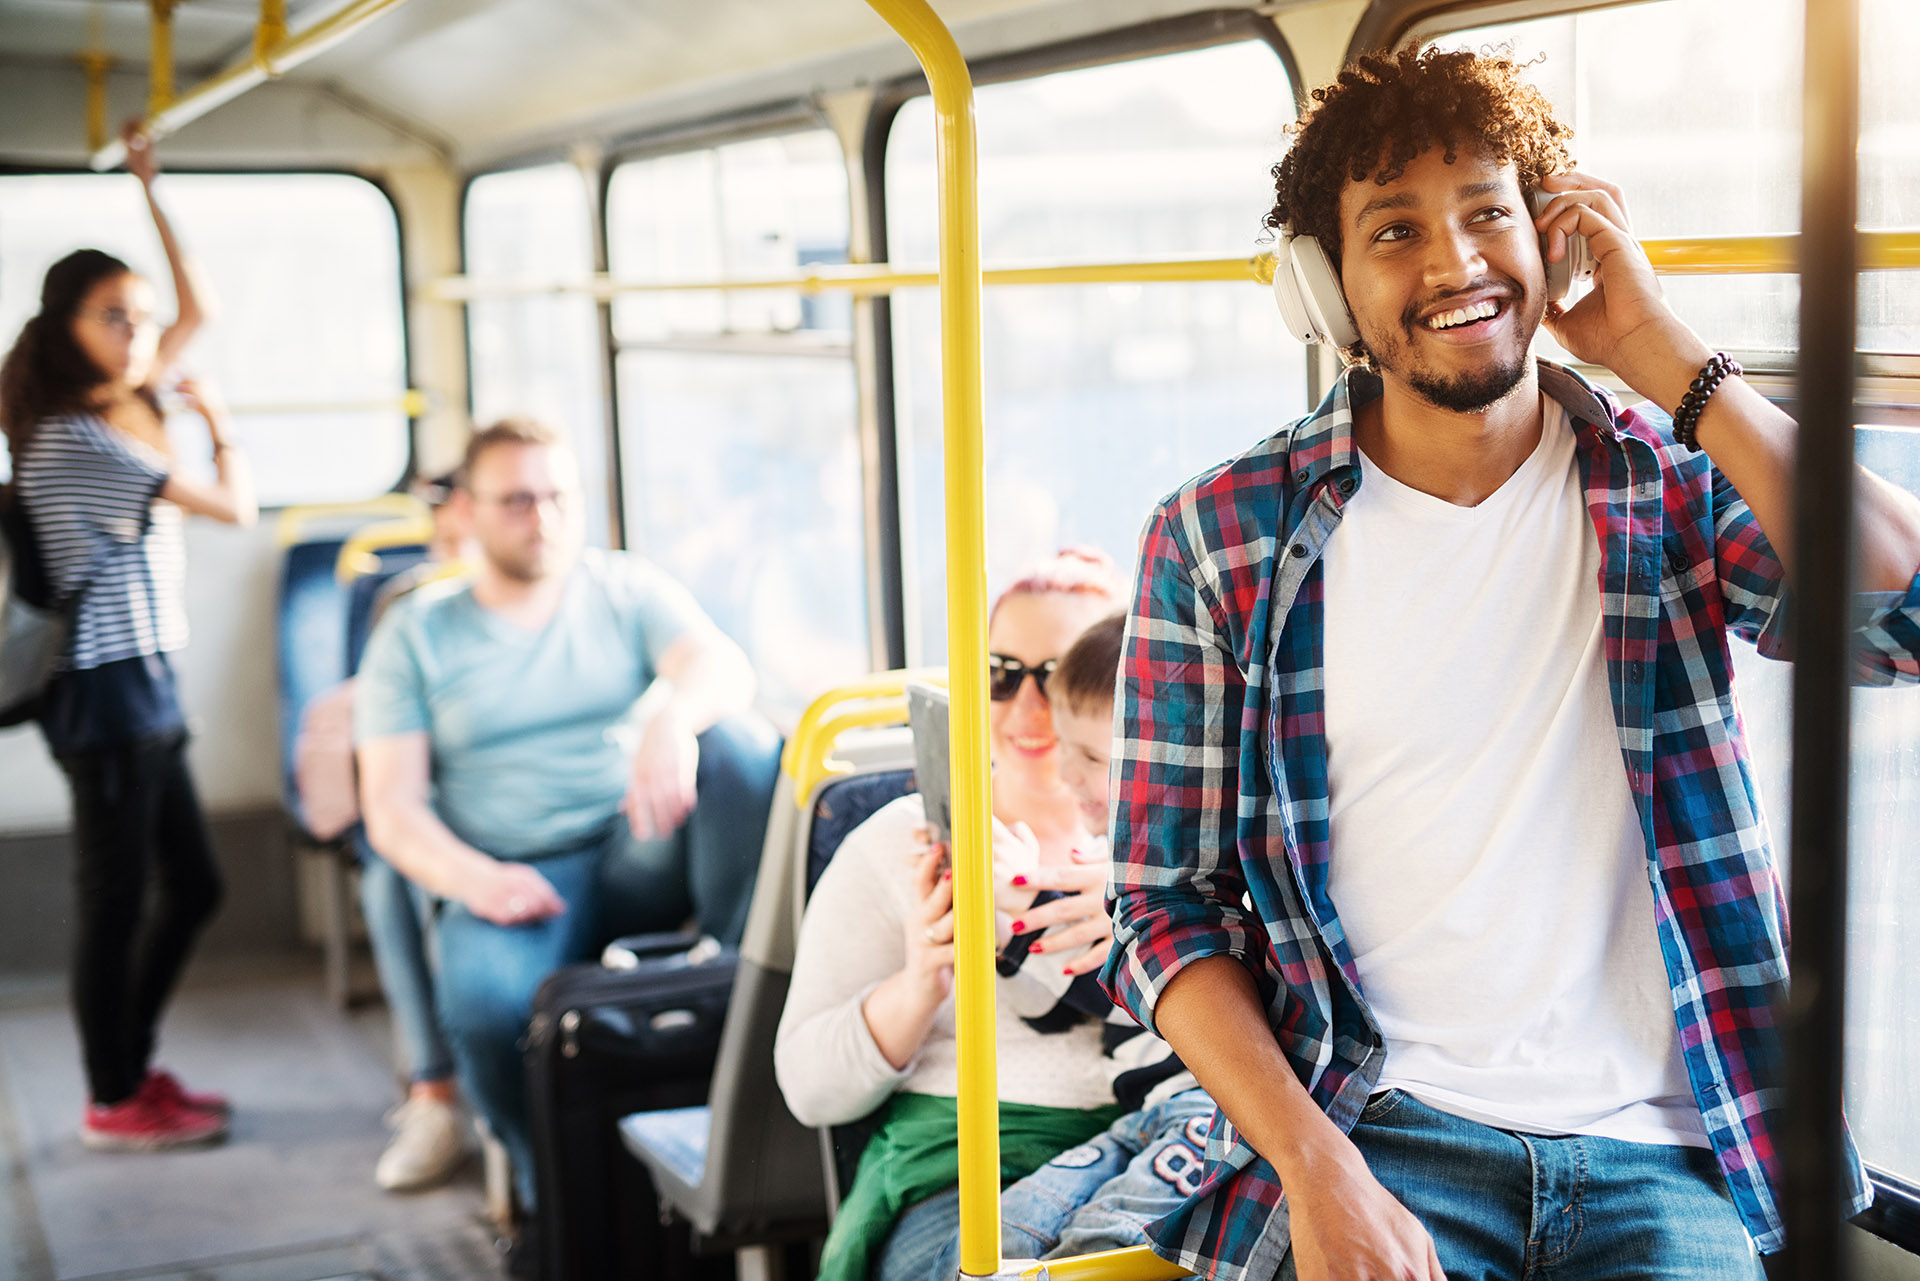 Автобус young. Молодой человек улыбается в автобусе путешествует. Фото людей путешествующих в доме автобусе. Спортсмены идут в автобус стоковые фото. Автобус спортсмены